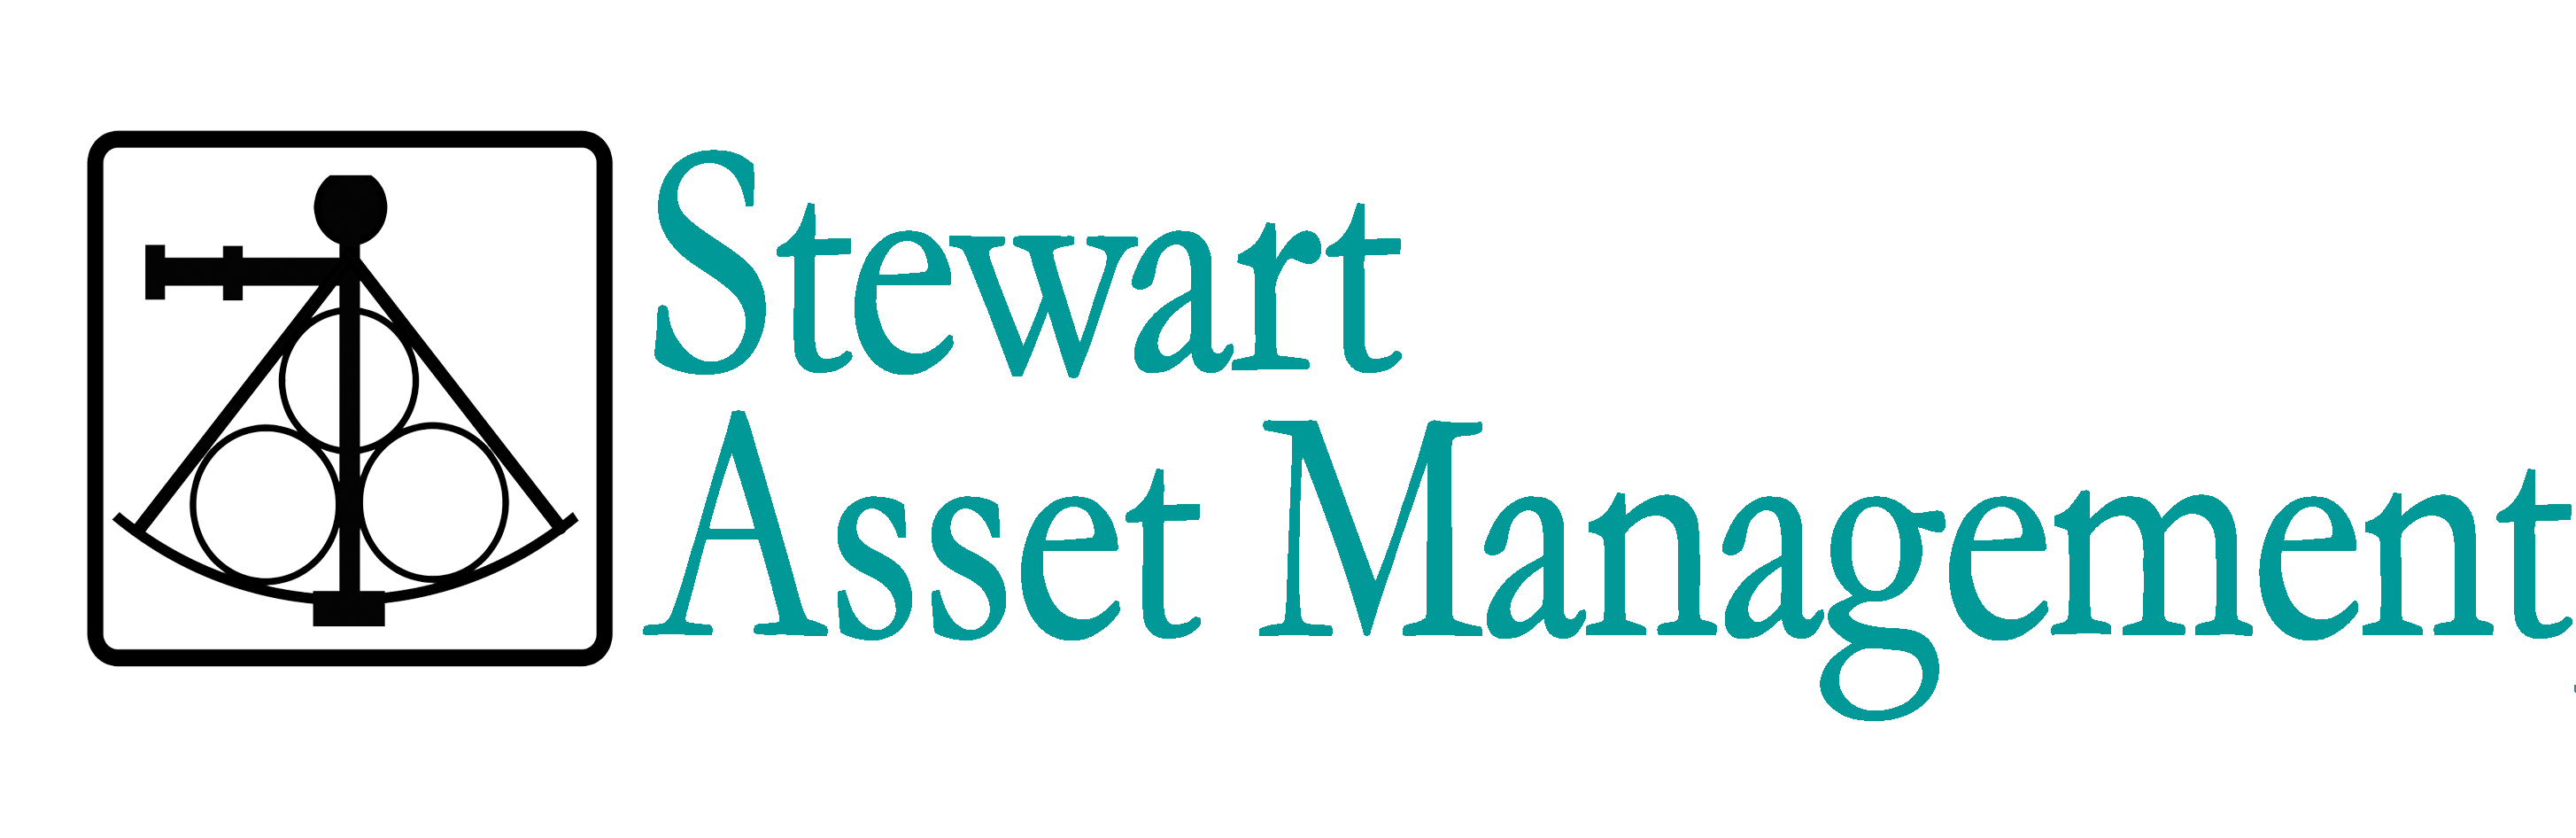 Stewart Asset Management